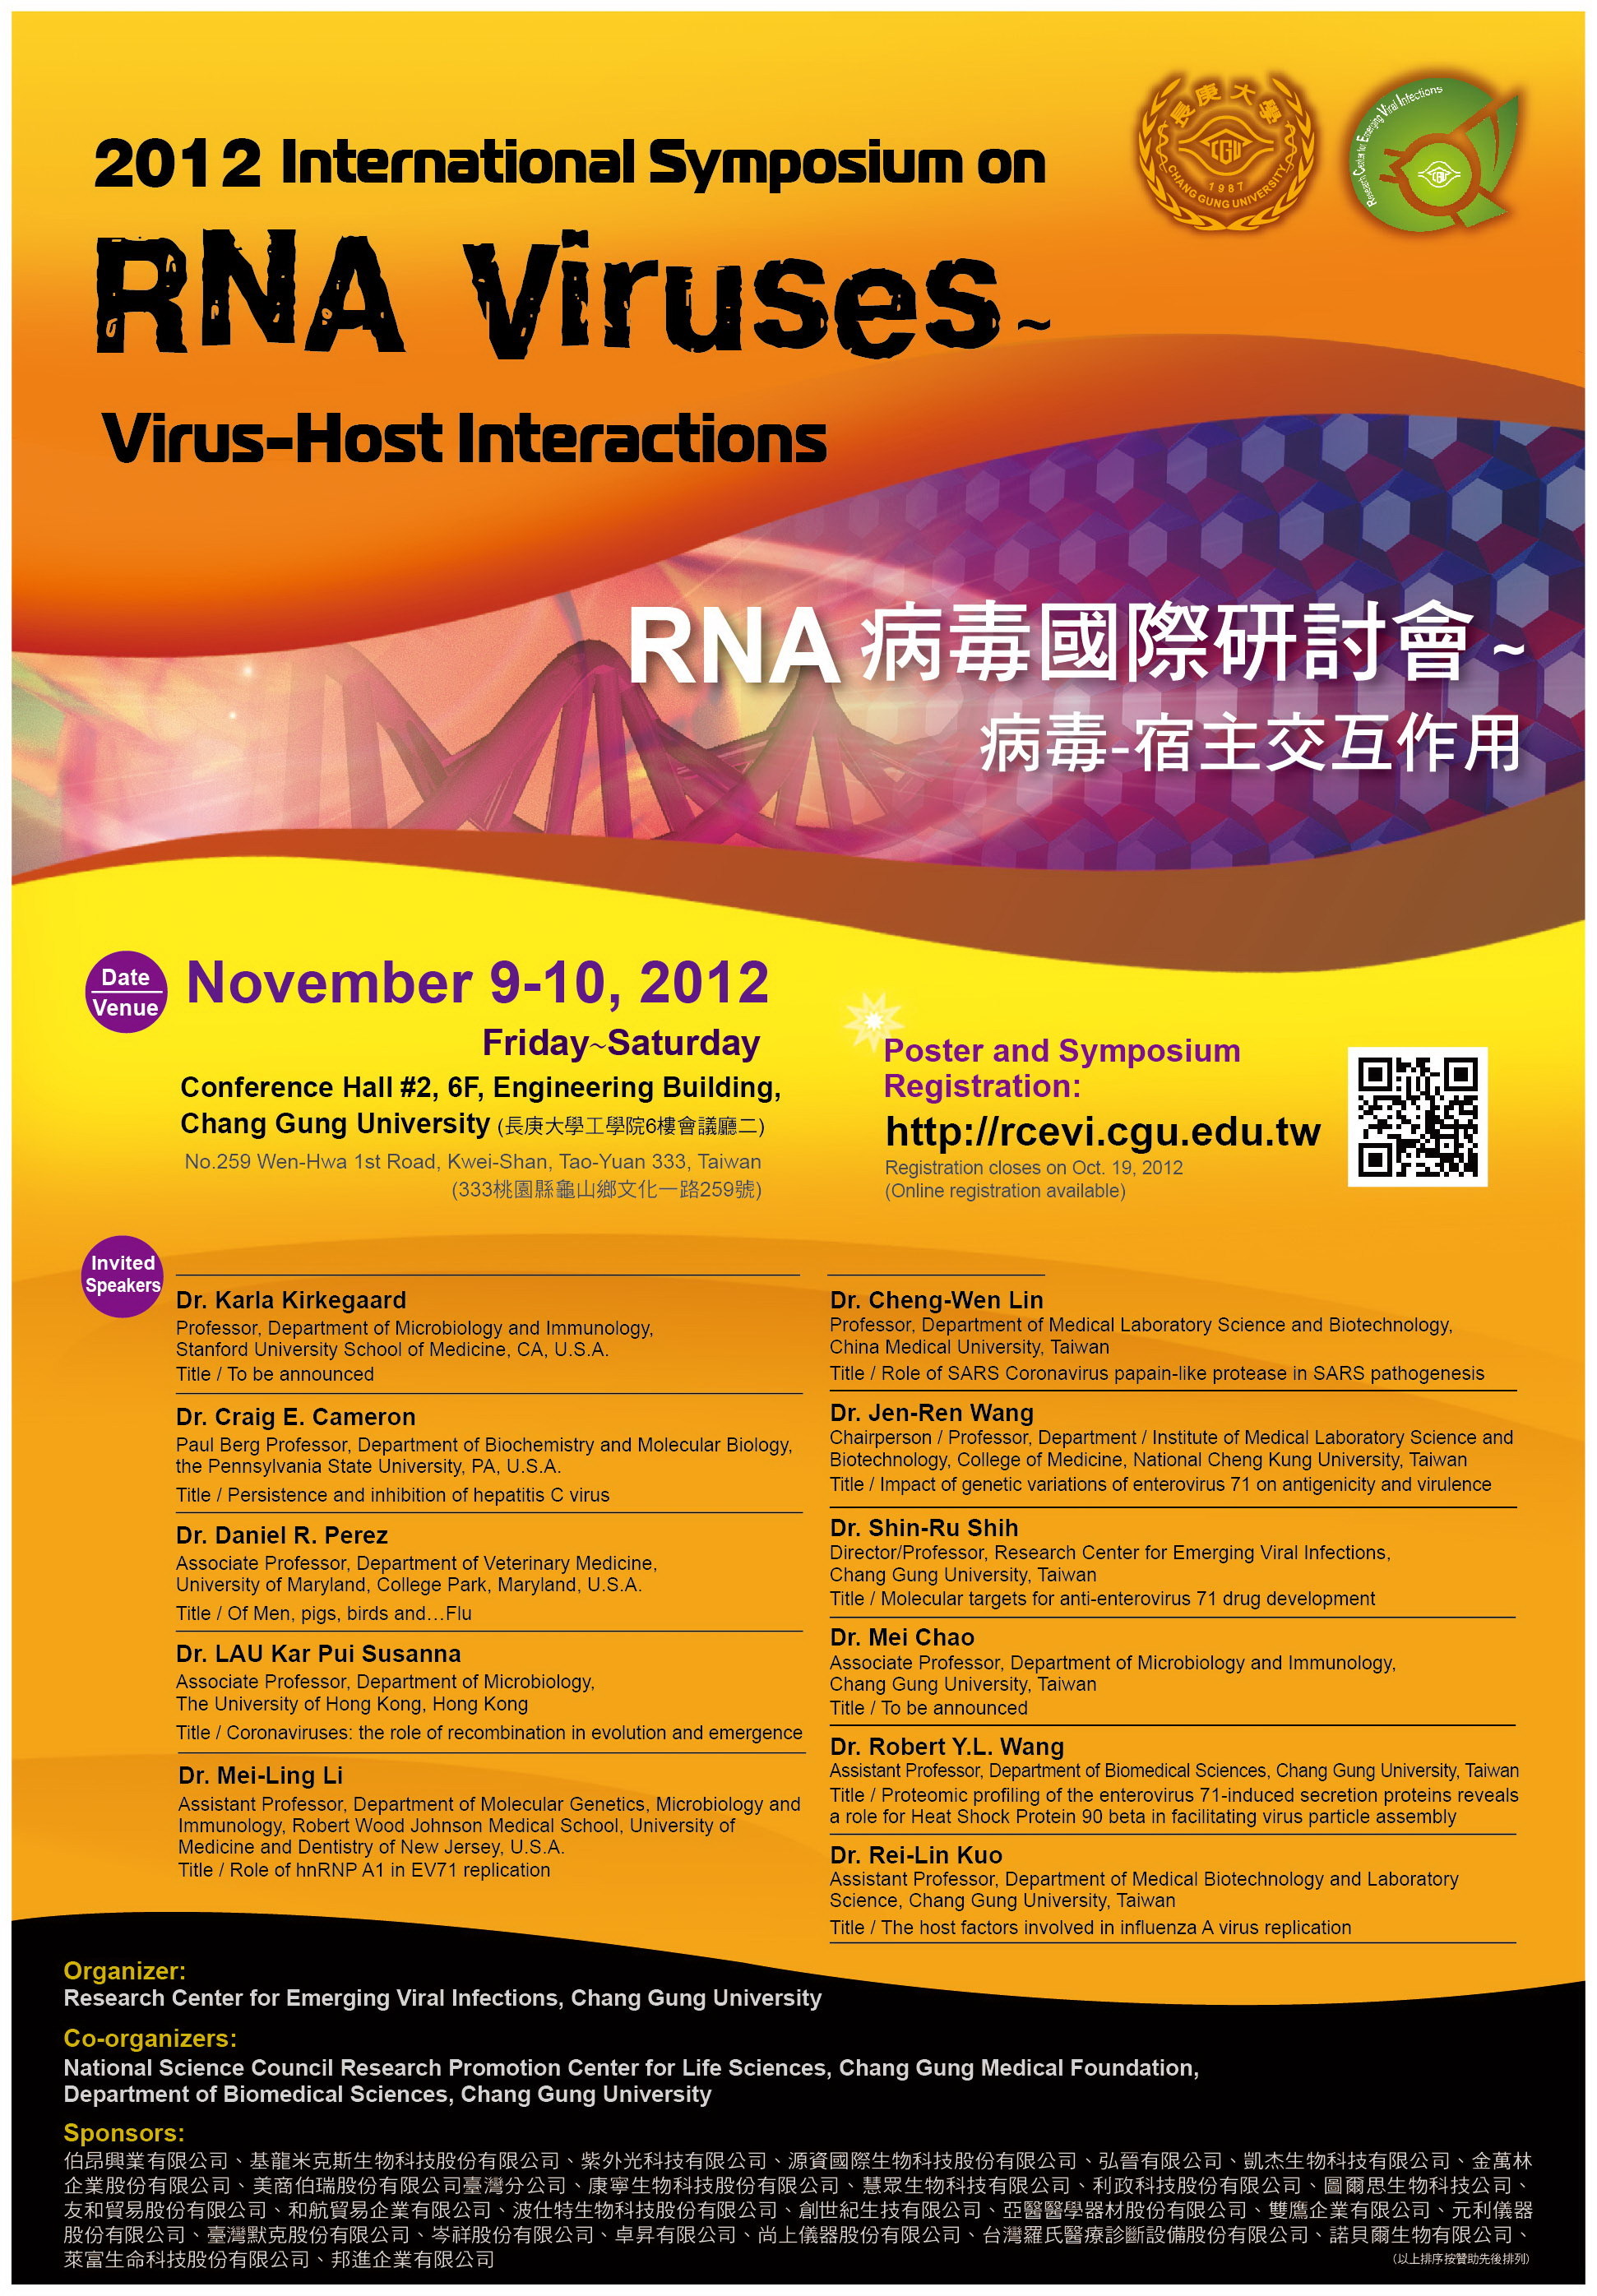 2012 International Symposium on RNA Viruses